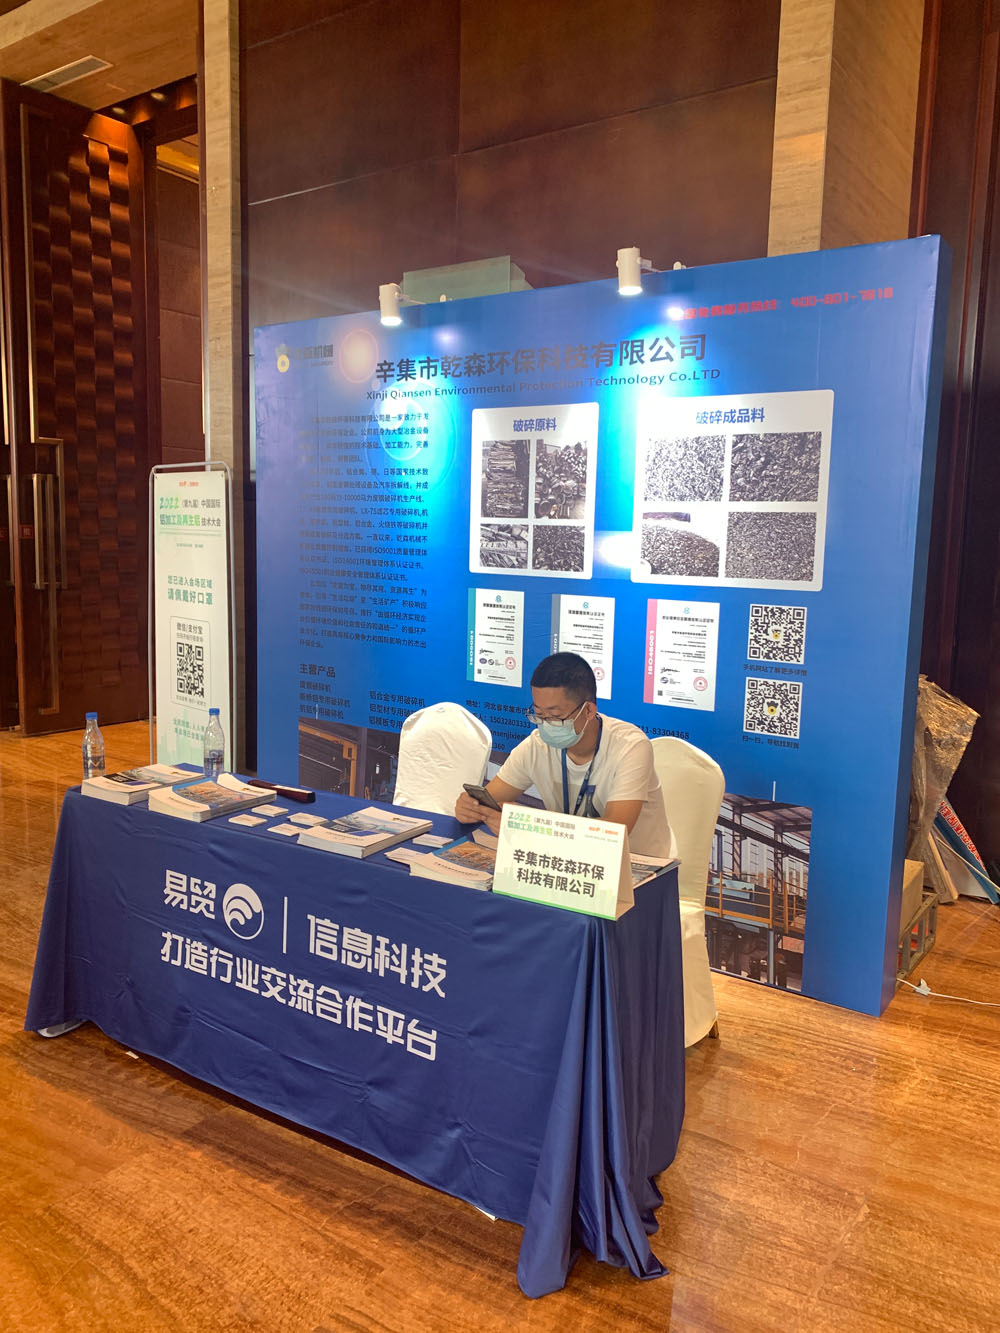 2022中国国际铝加工及再生铝技术大会